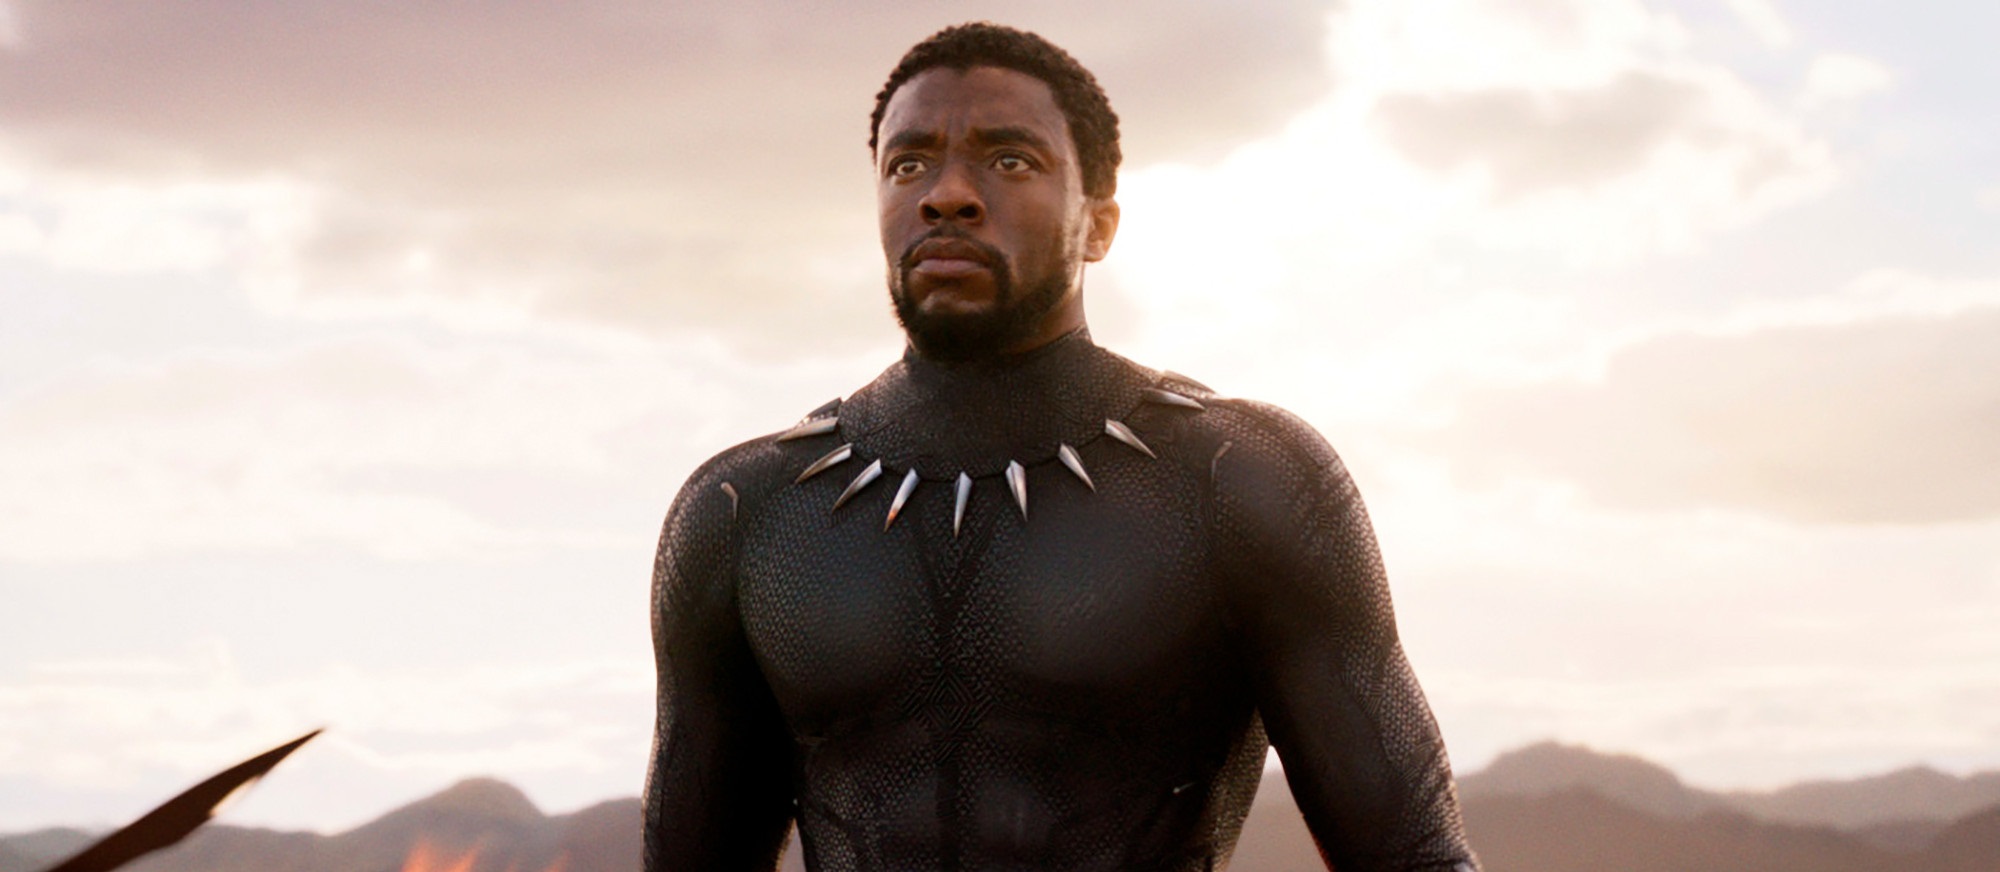 Disney confirma que Chadwick Boseman no será reemplazado en la secuela de "Black Panther"